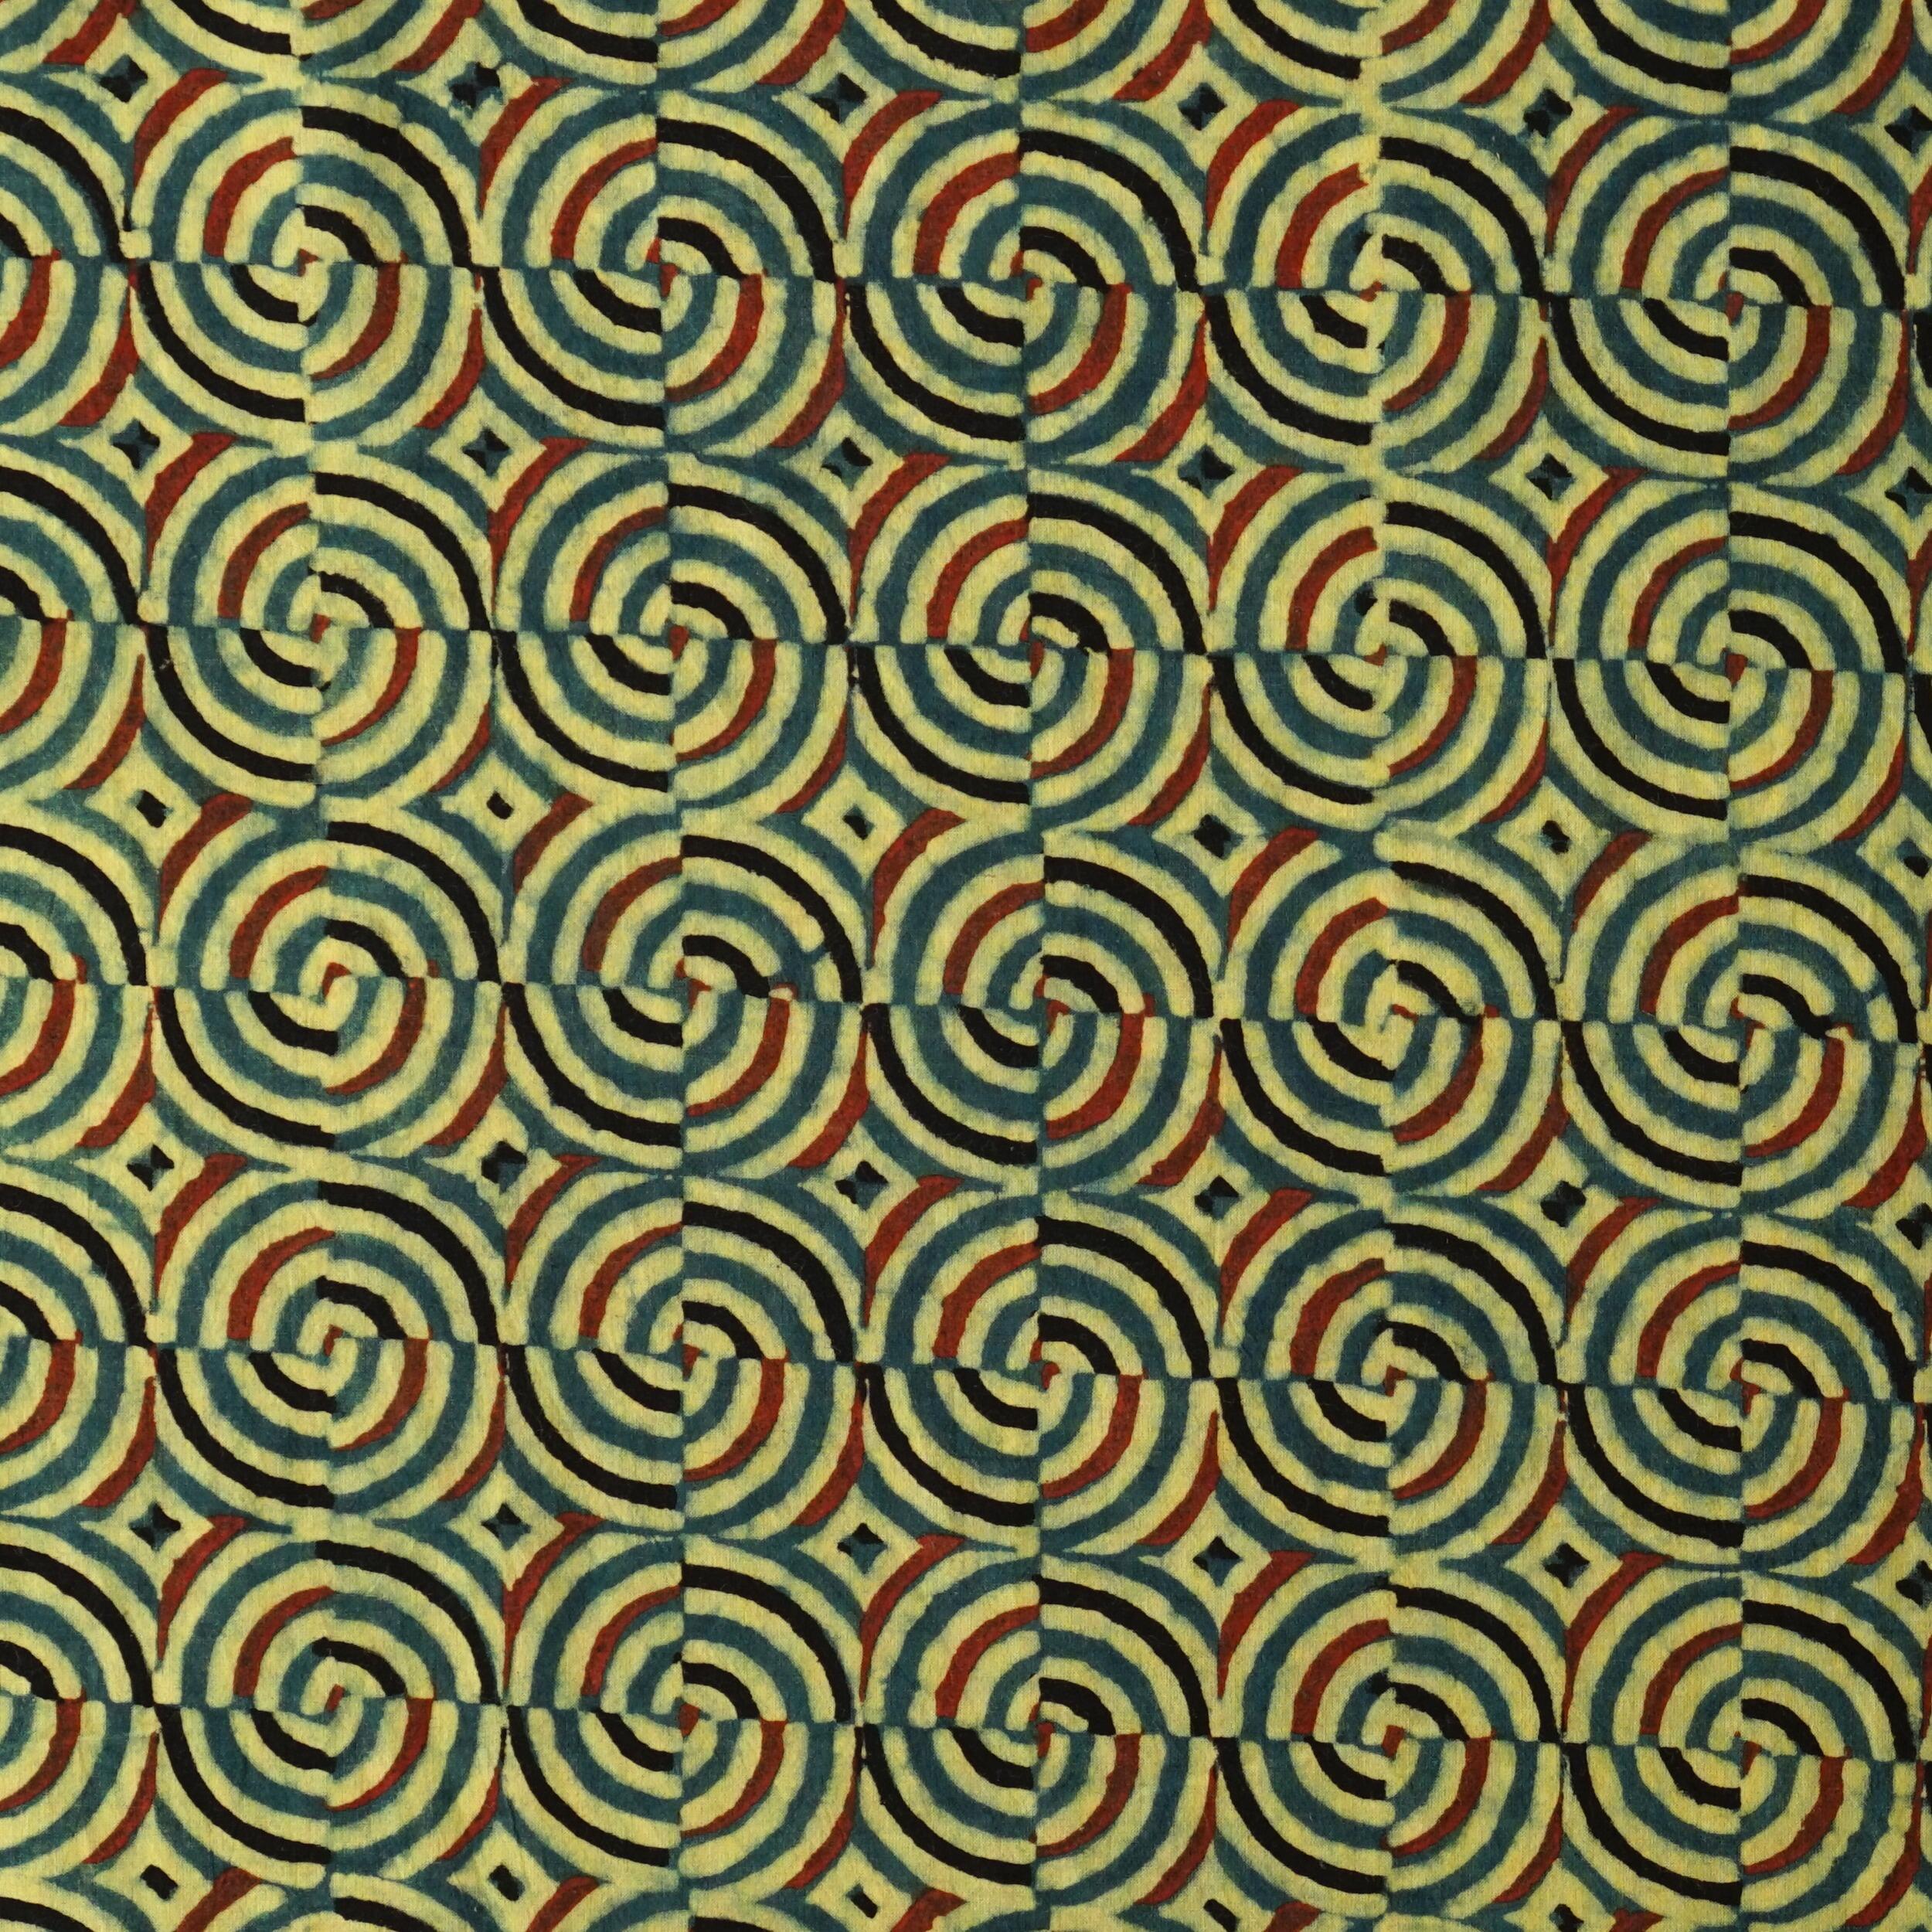 SIK41 - Wood Block-Printed Cotton - Kaleidascope Design - Green Indigo, Yellow, Red & Black Dye - Flat